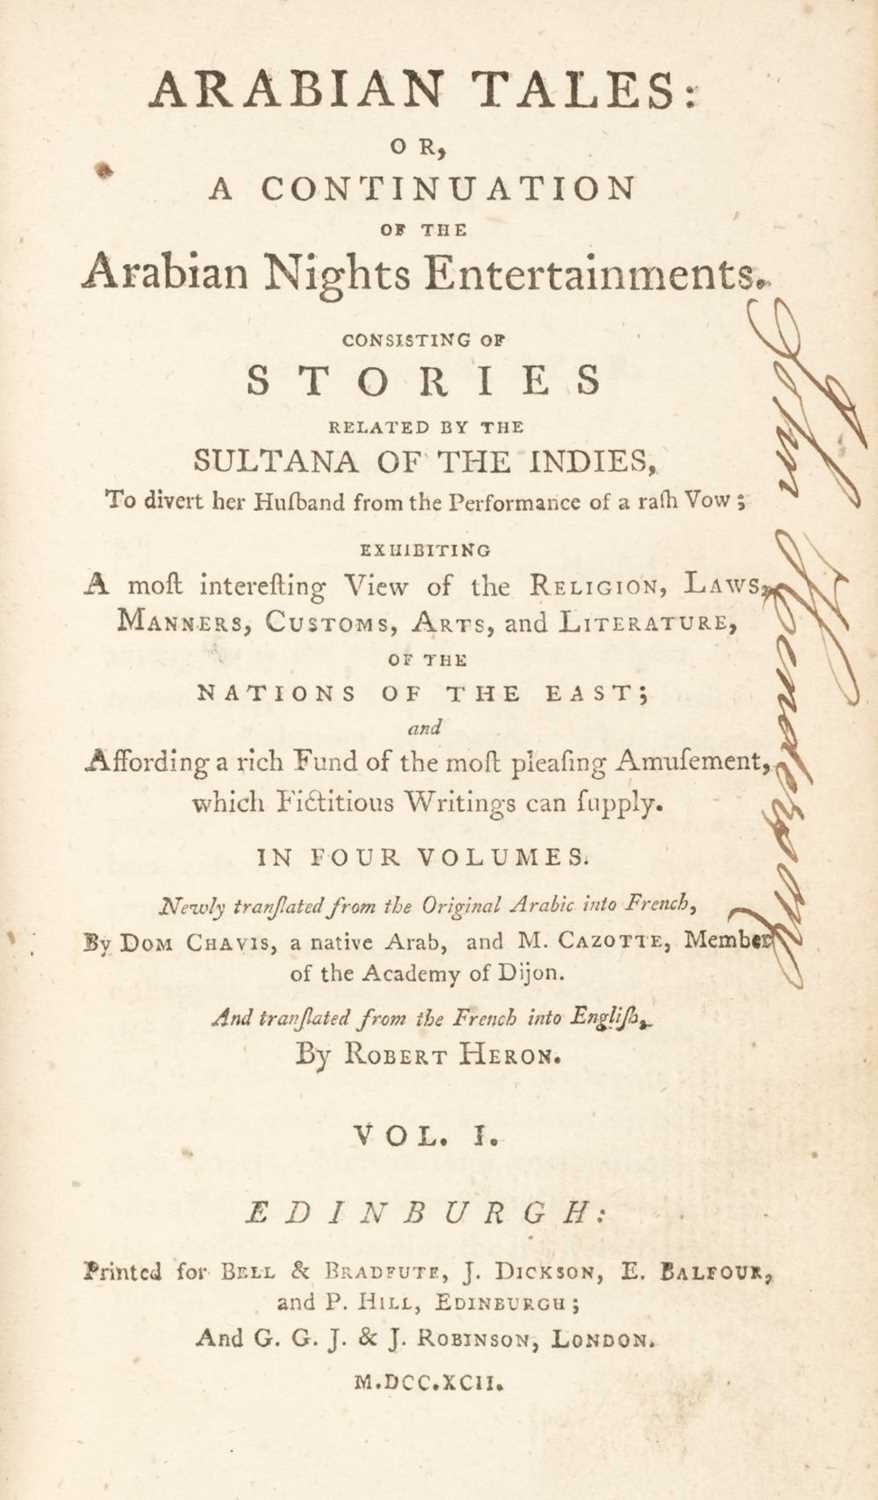 Lot 235 - Heron (Robert, translator). Arabian Tales..., 1792